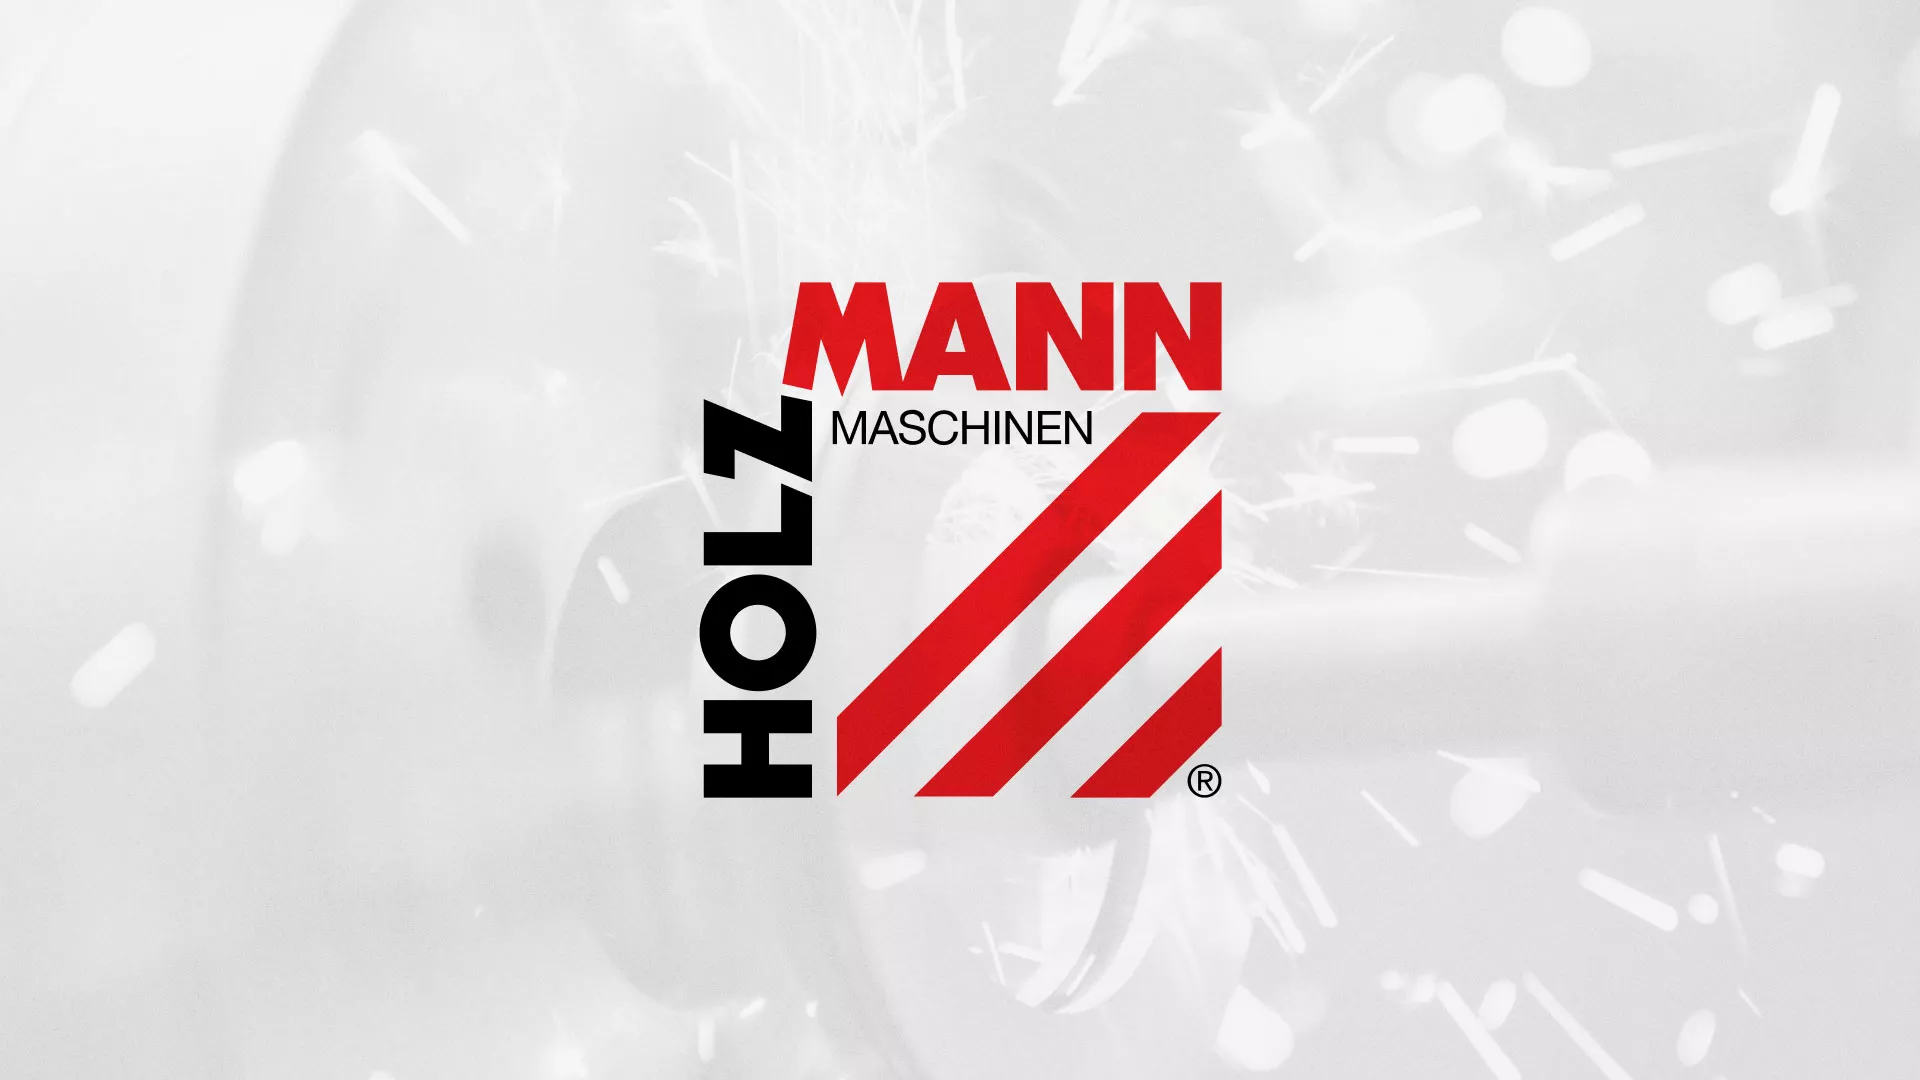 Создание сайта компании «HOLZMANN Maschinen GmbH» в Чаплыгине